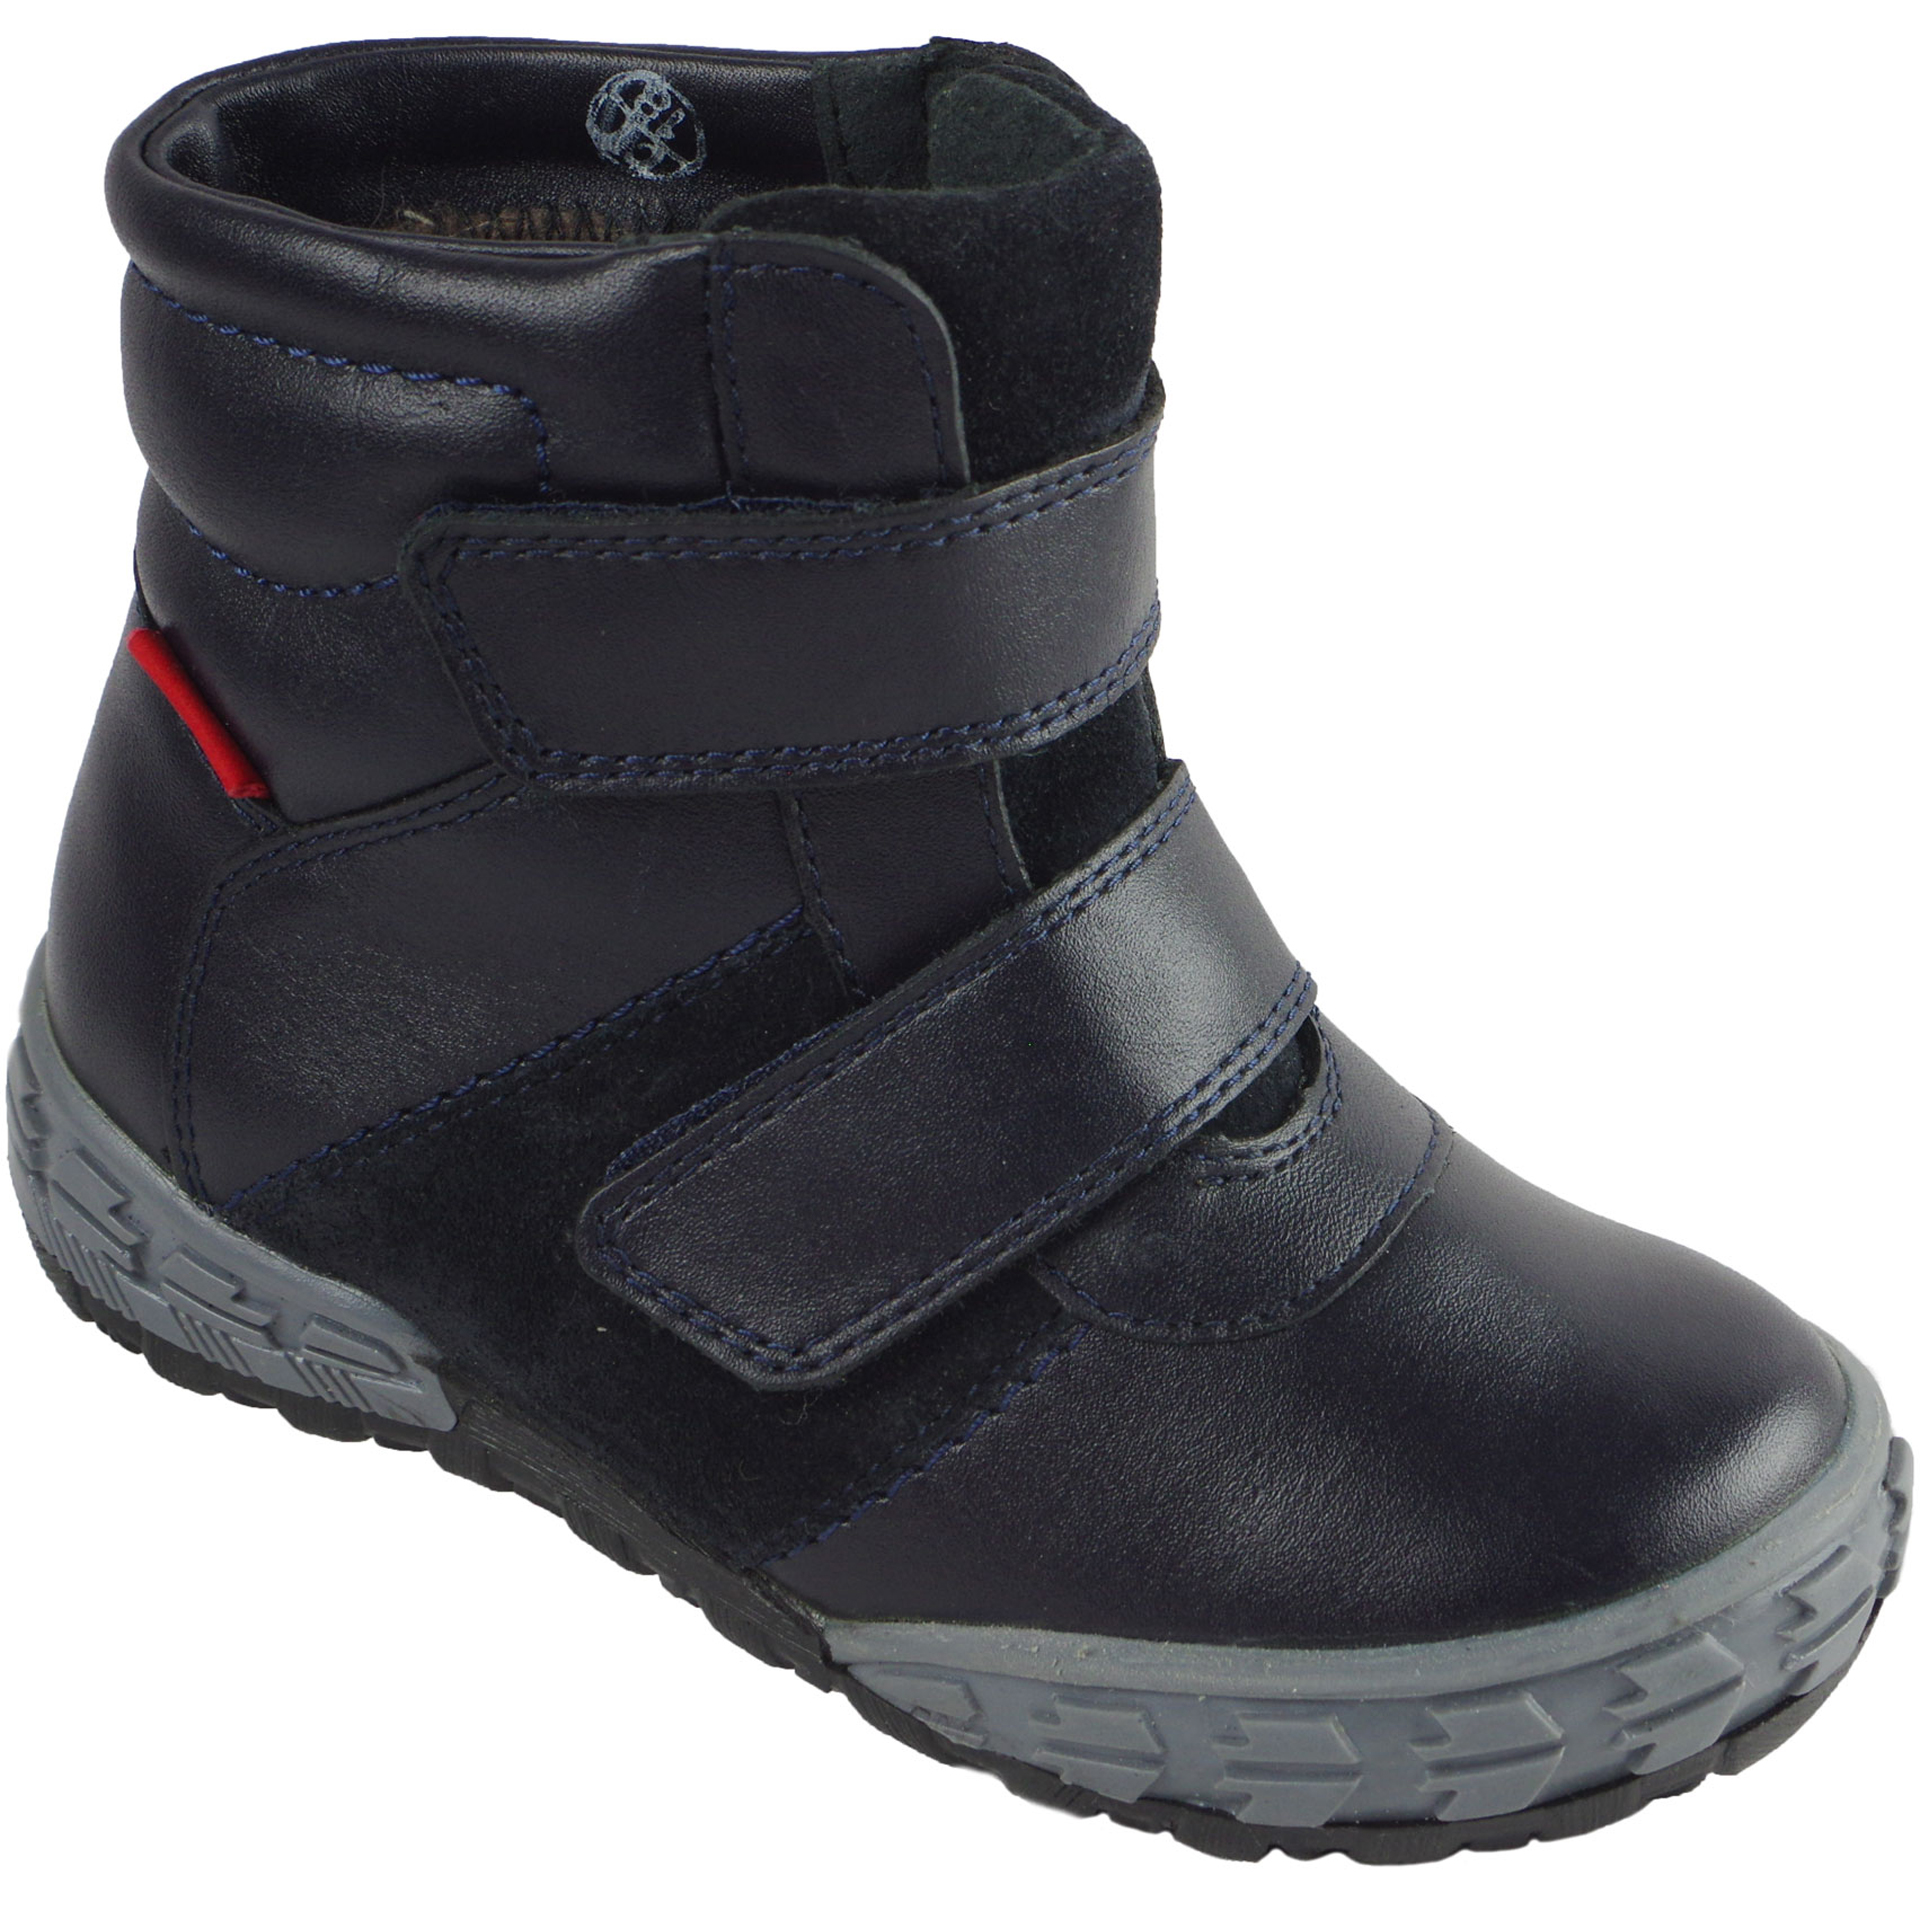 Зимові чоботи (2052) для хлопчика, матеріал Натуральна шкіра, Темно-синій колір, 23-26 розміри – Sole Kids. Фото 1